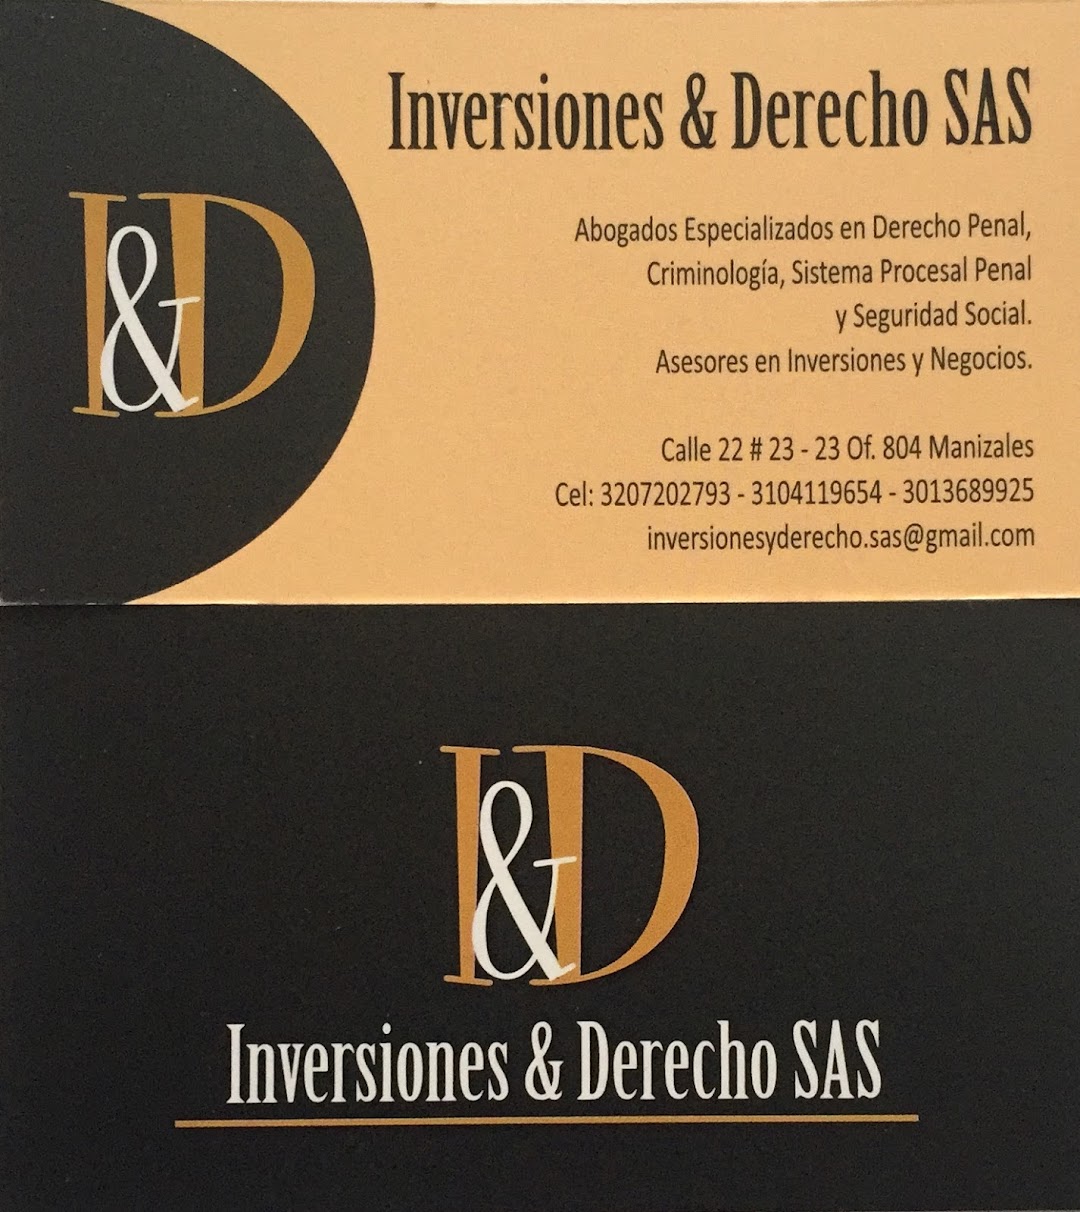 INVERSIONES & DERECHO S.A.S.